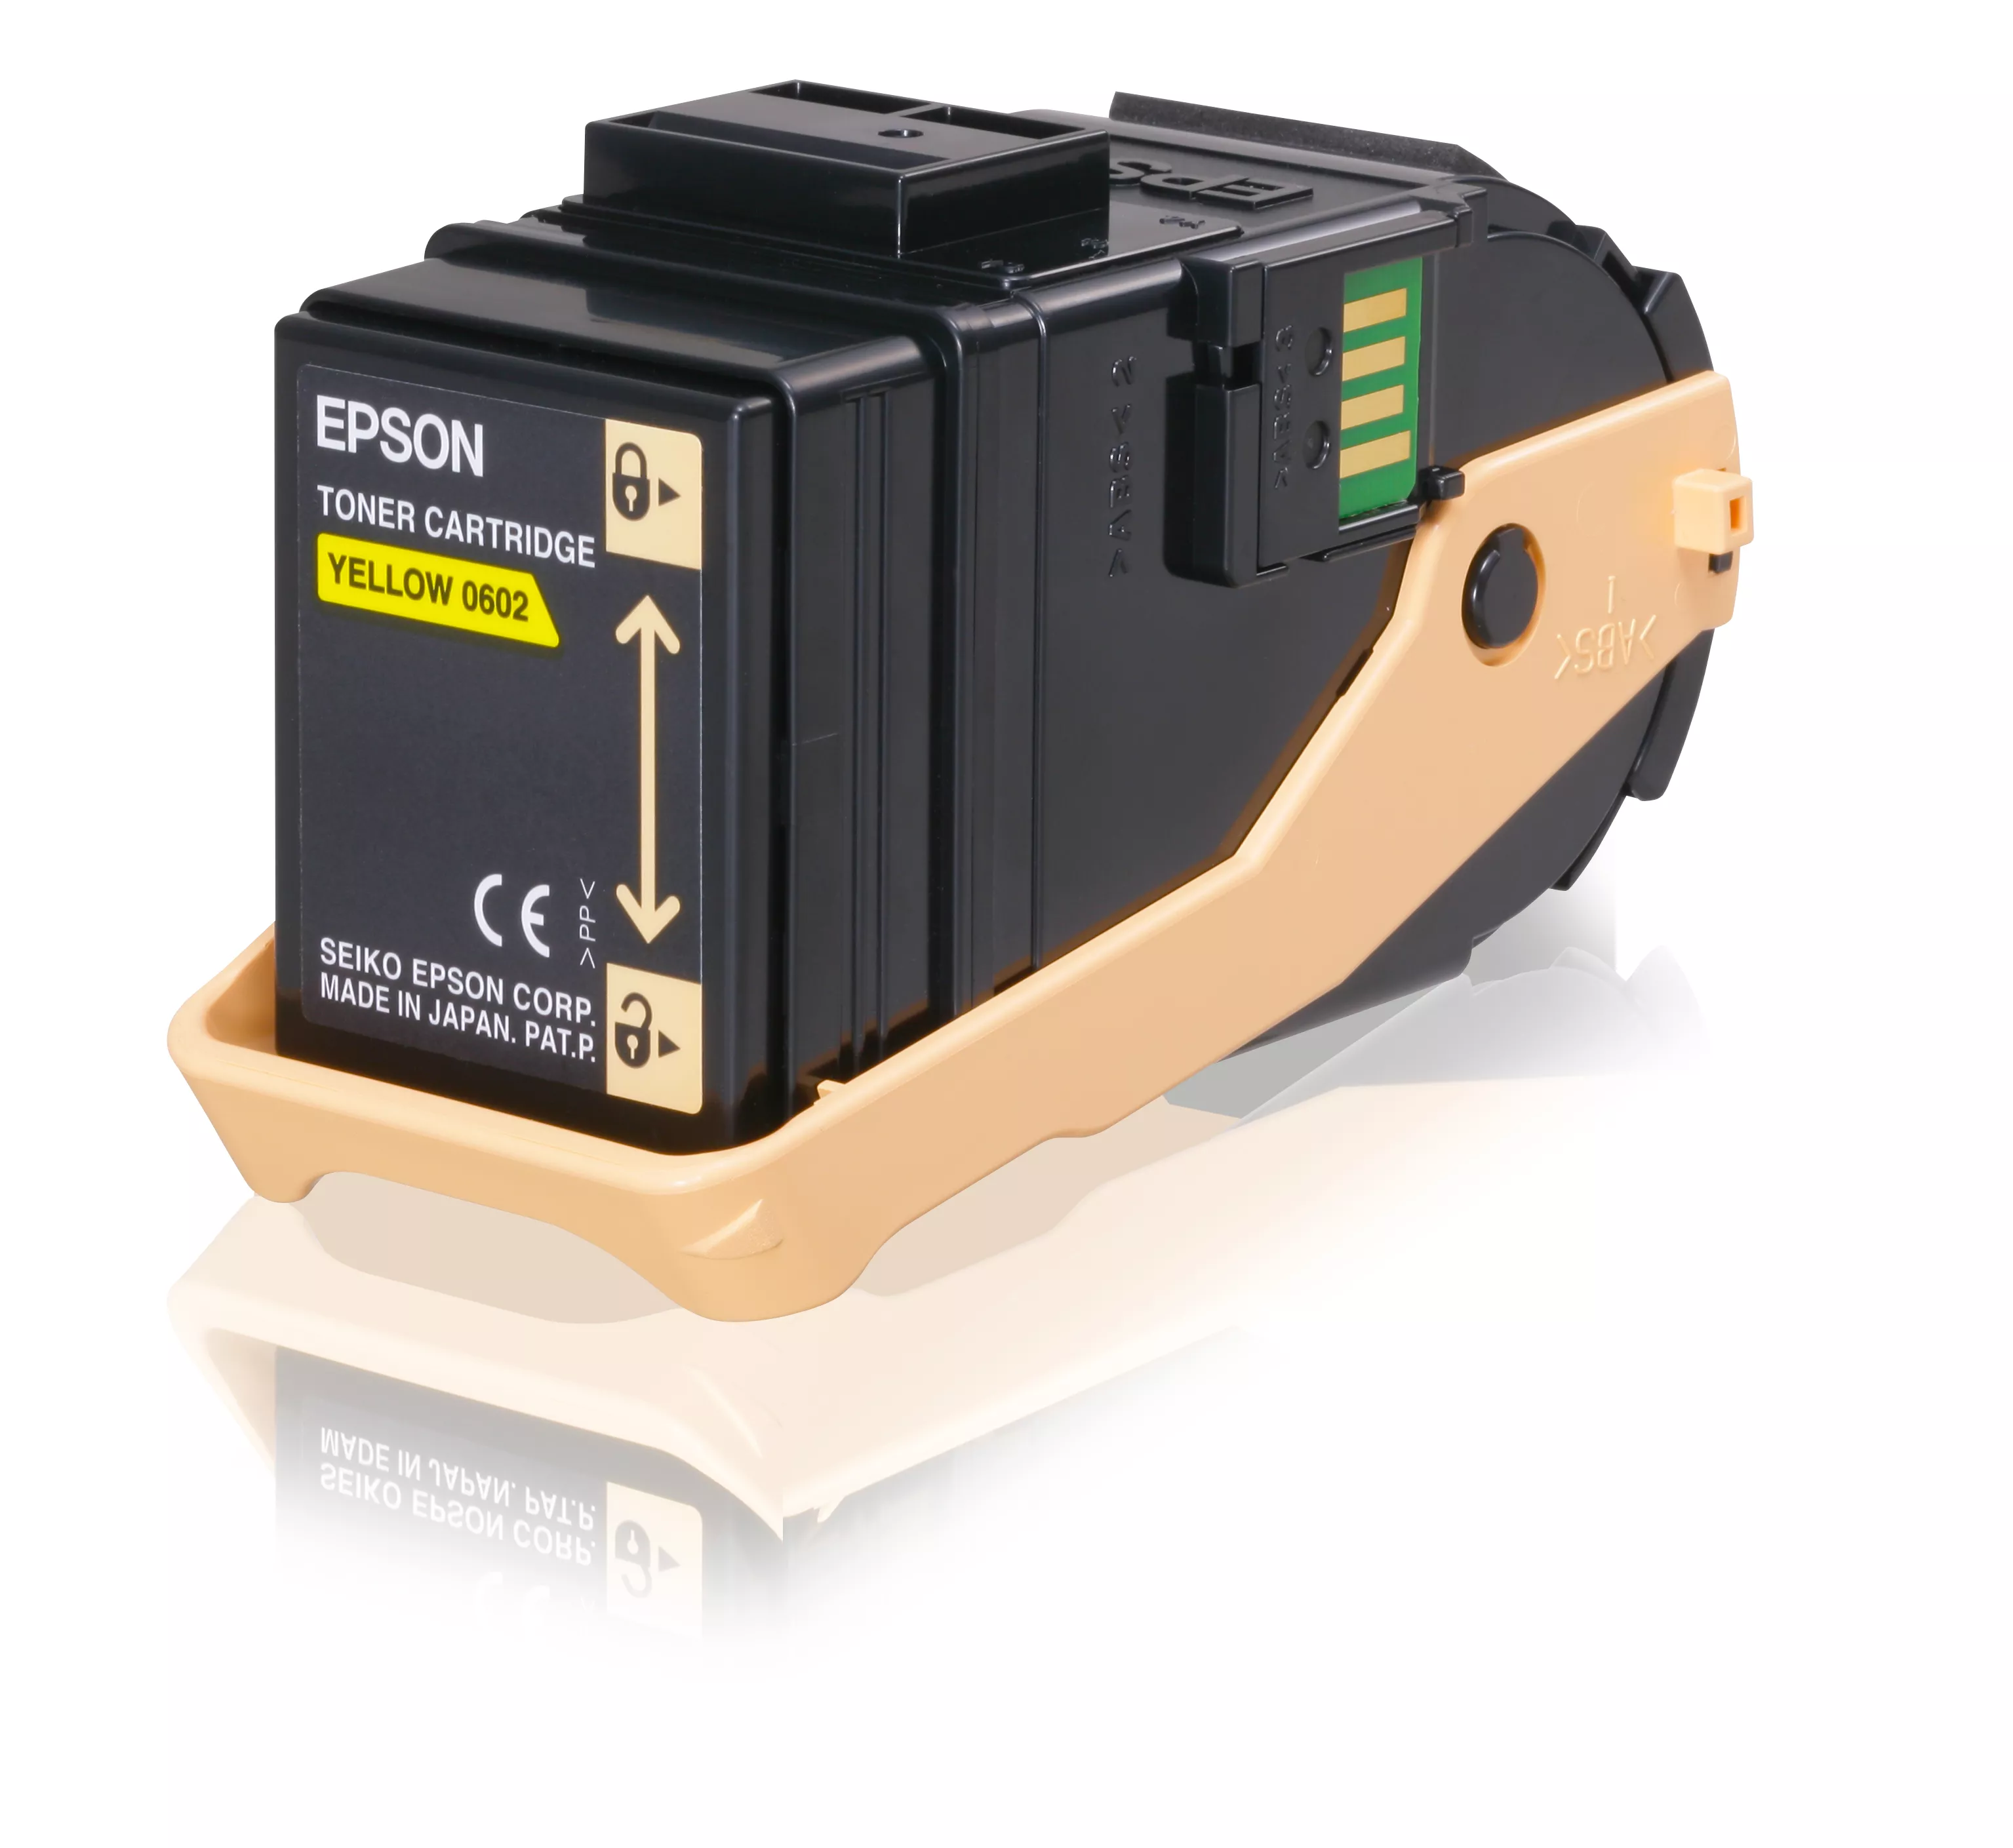 Revendeur officiel Toner EPSON AL-C9300N cartouche de toner jaune capacité